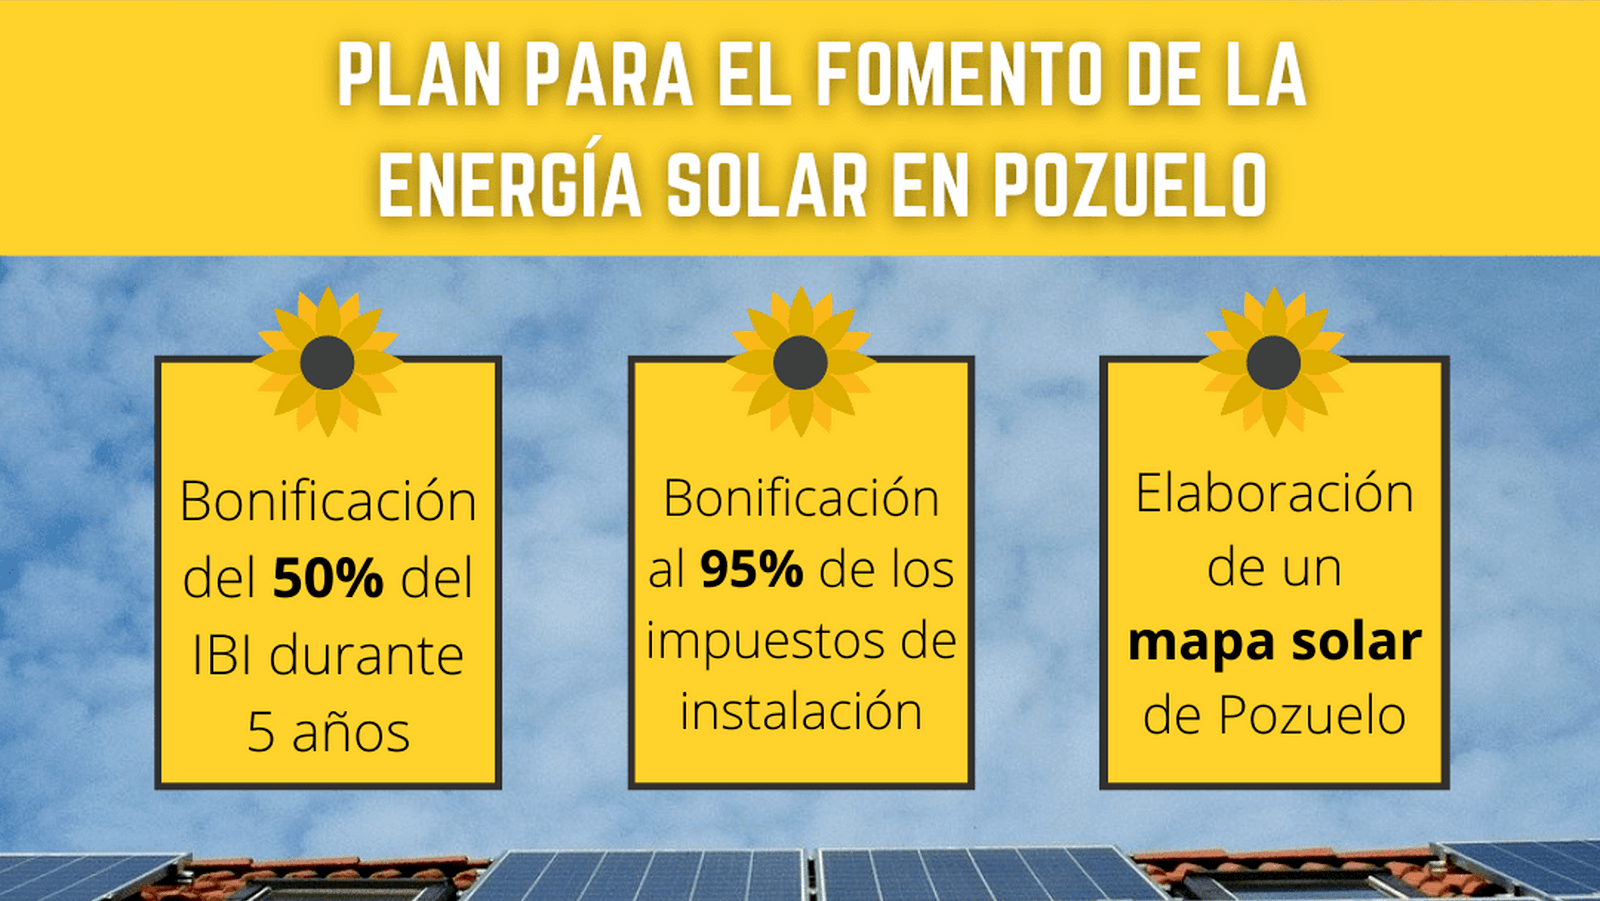 Somos Pozuelo presenta un plan para fomentar las energías renovables   